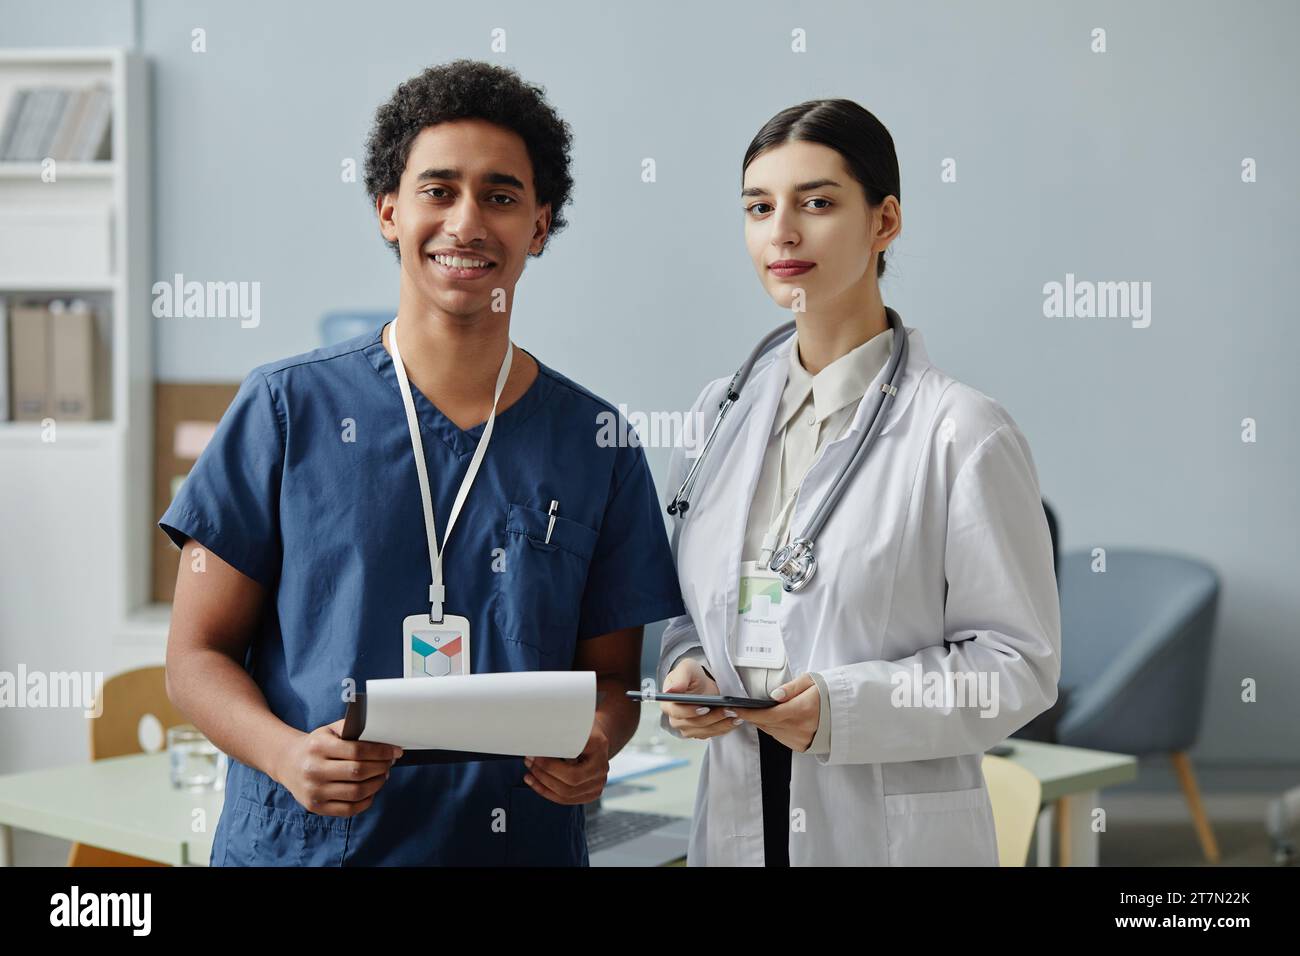 Vita in alto ritratto di due giovani stagisti medici che guardano la macchina fotografica in piedi nell'ufficio della clinica, spazio copia Foto Stock